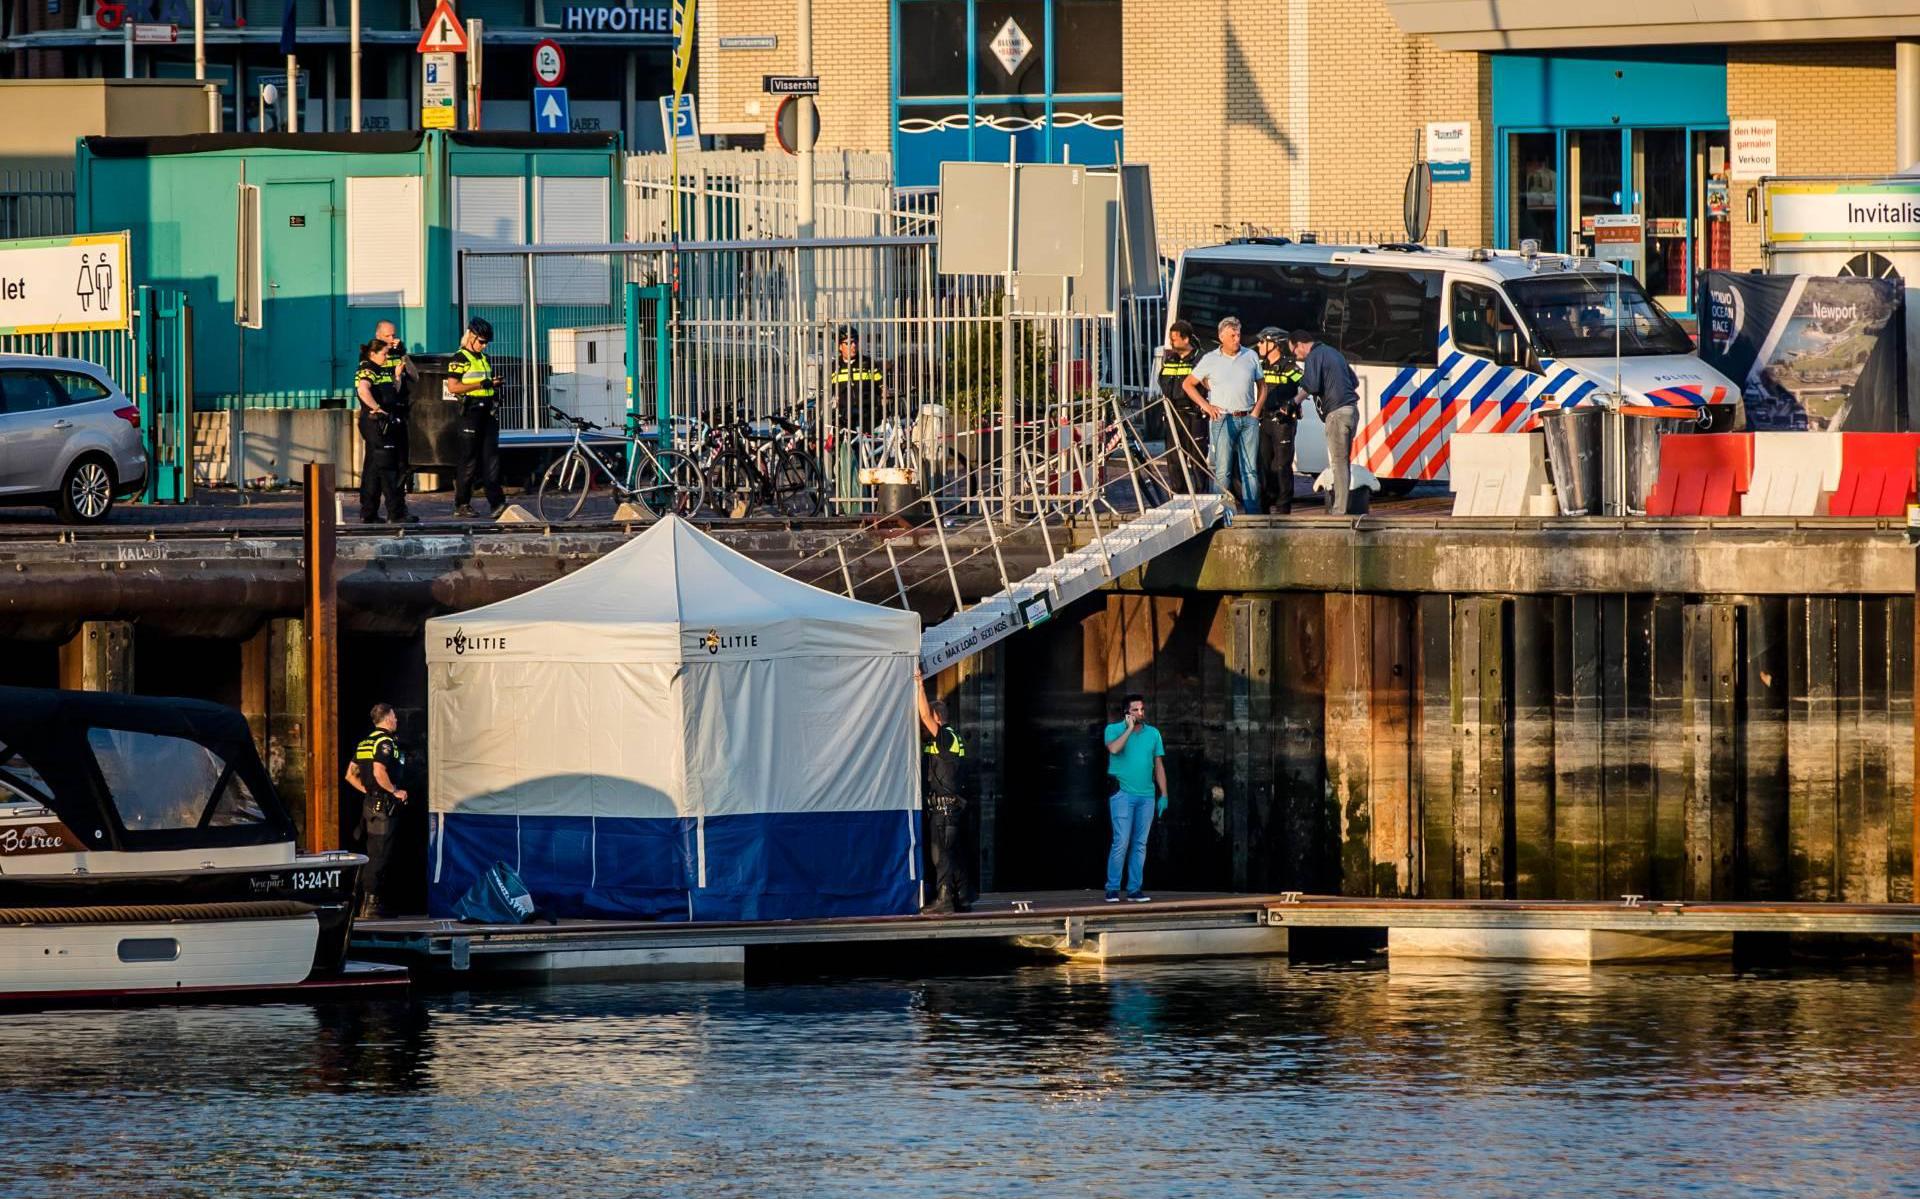 Deskundigen oneens over oorzaak fataal ongeluk haven Scheveningen